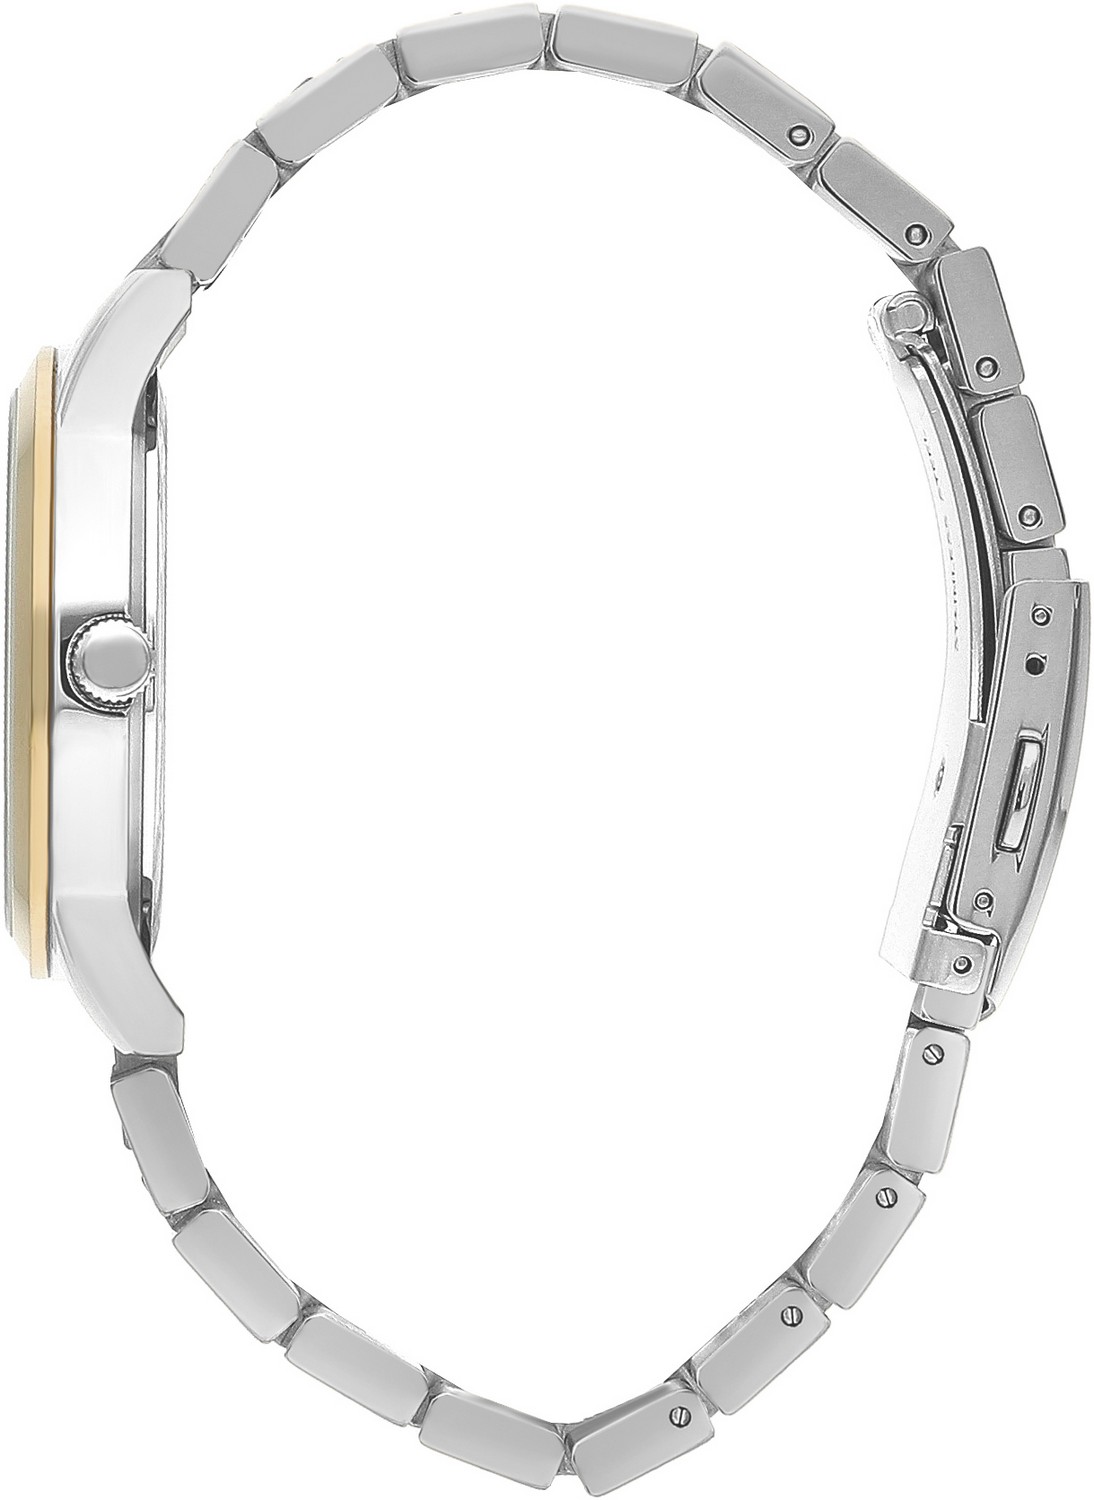 BEVERLY HILLS POLO CLUB  Женские часы, кварцевый механизм, сталь с покрытием, 36 мм